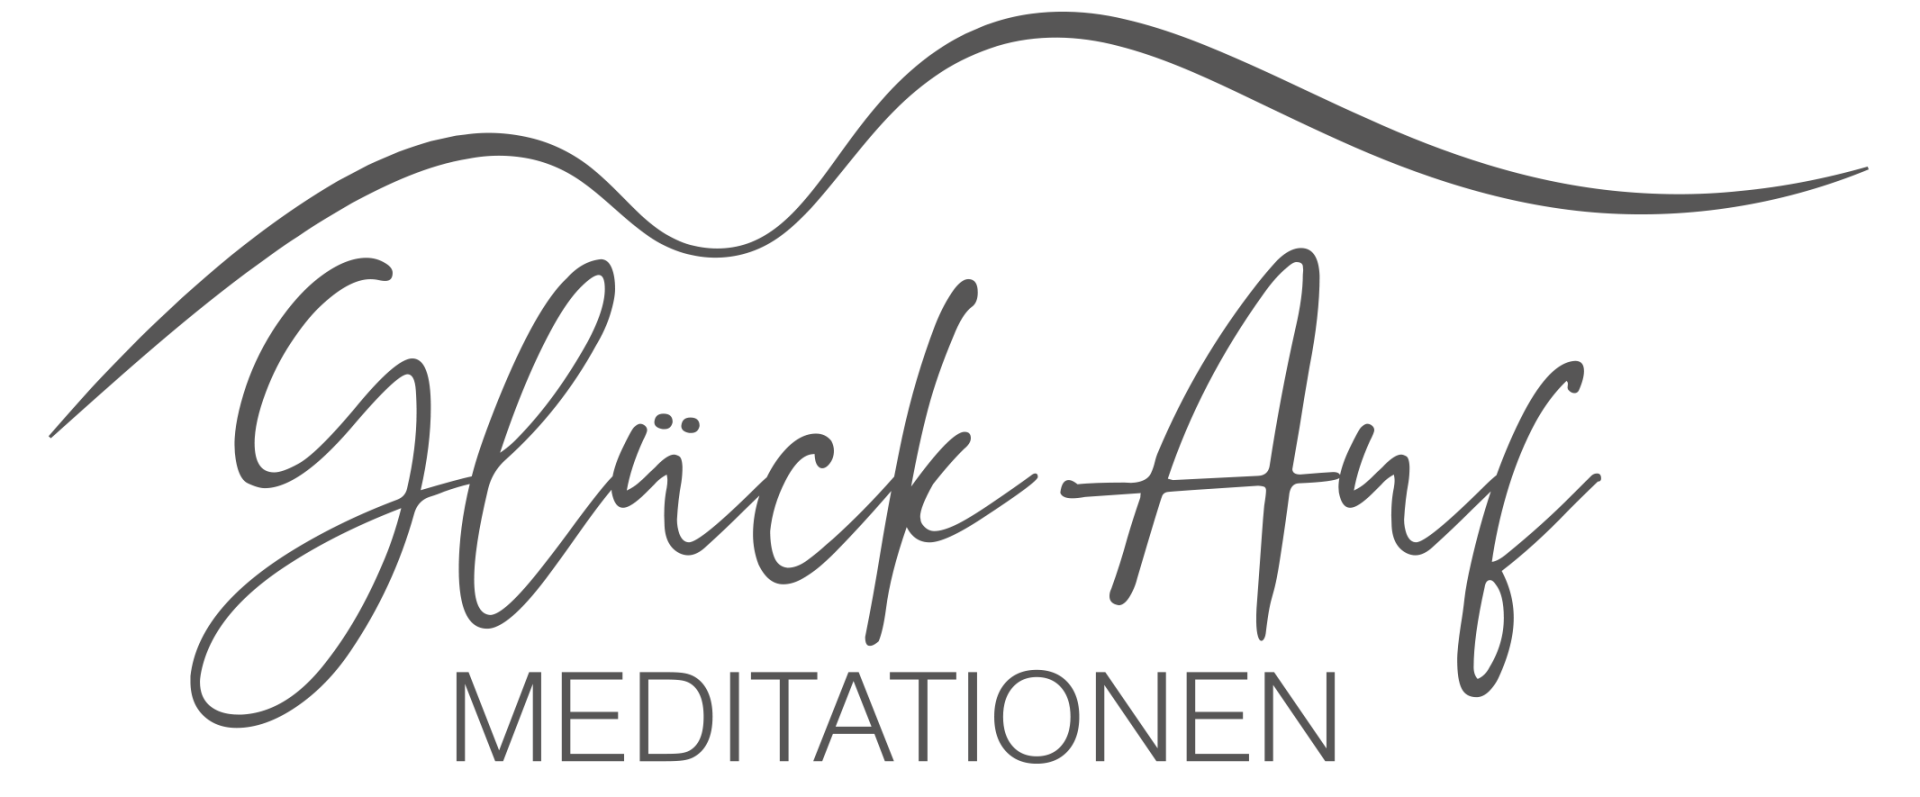 Logo GlückAuf Meditationen